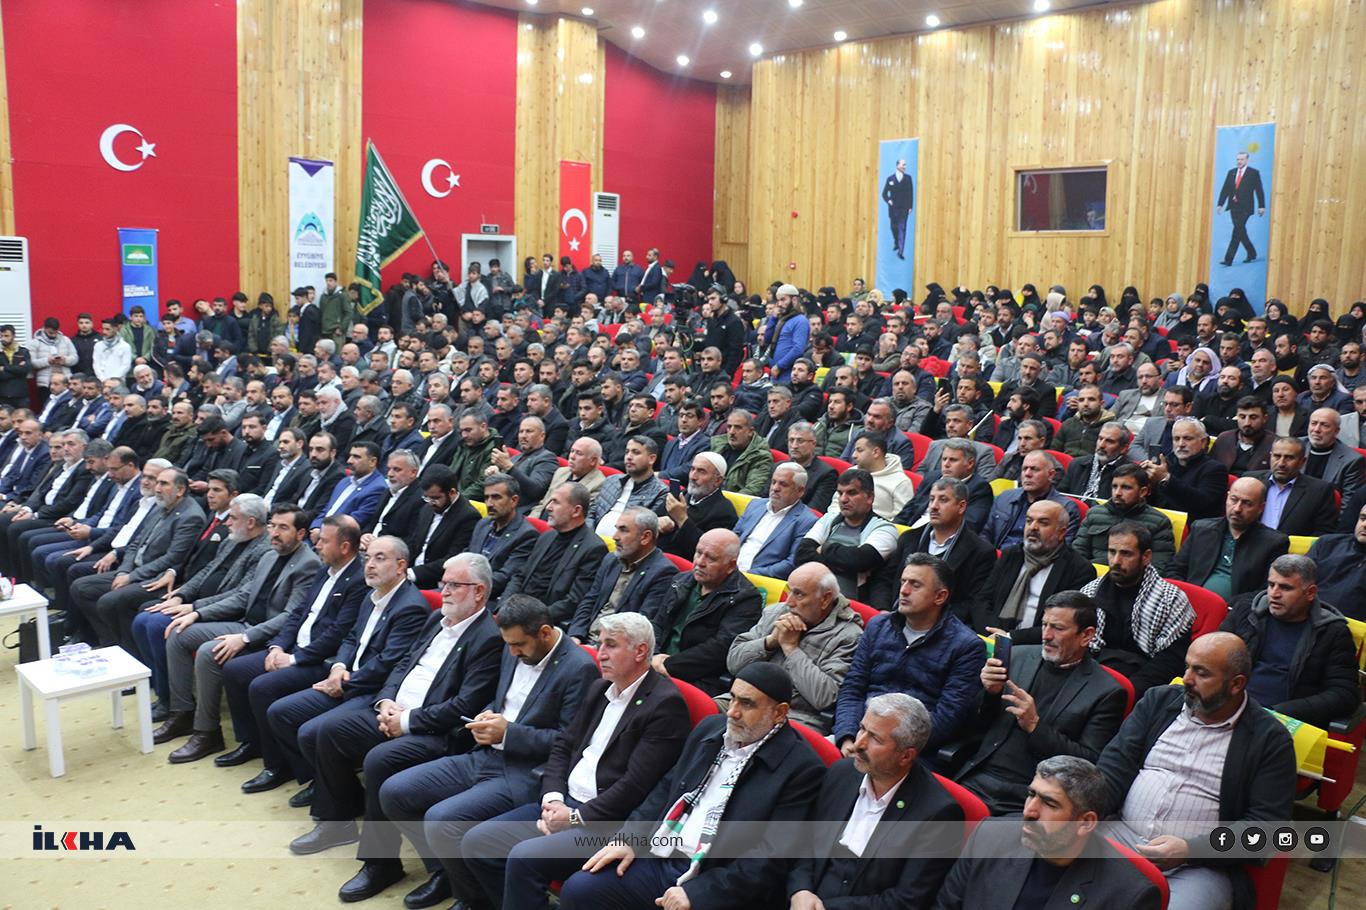 HÜDA PAR Genel Başkanı Zekeriya Yapıcıoğlu'nun katılımıyla Şanlıurfa'da bazı il ve ilçelerin belediye başkan adayları tanıtıldı.